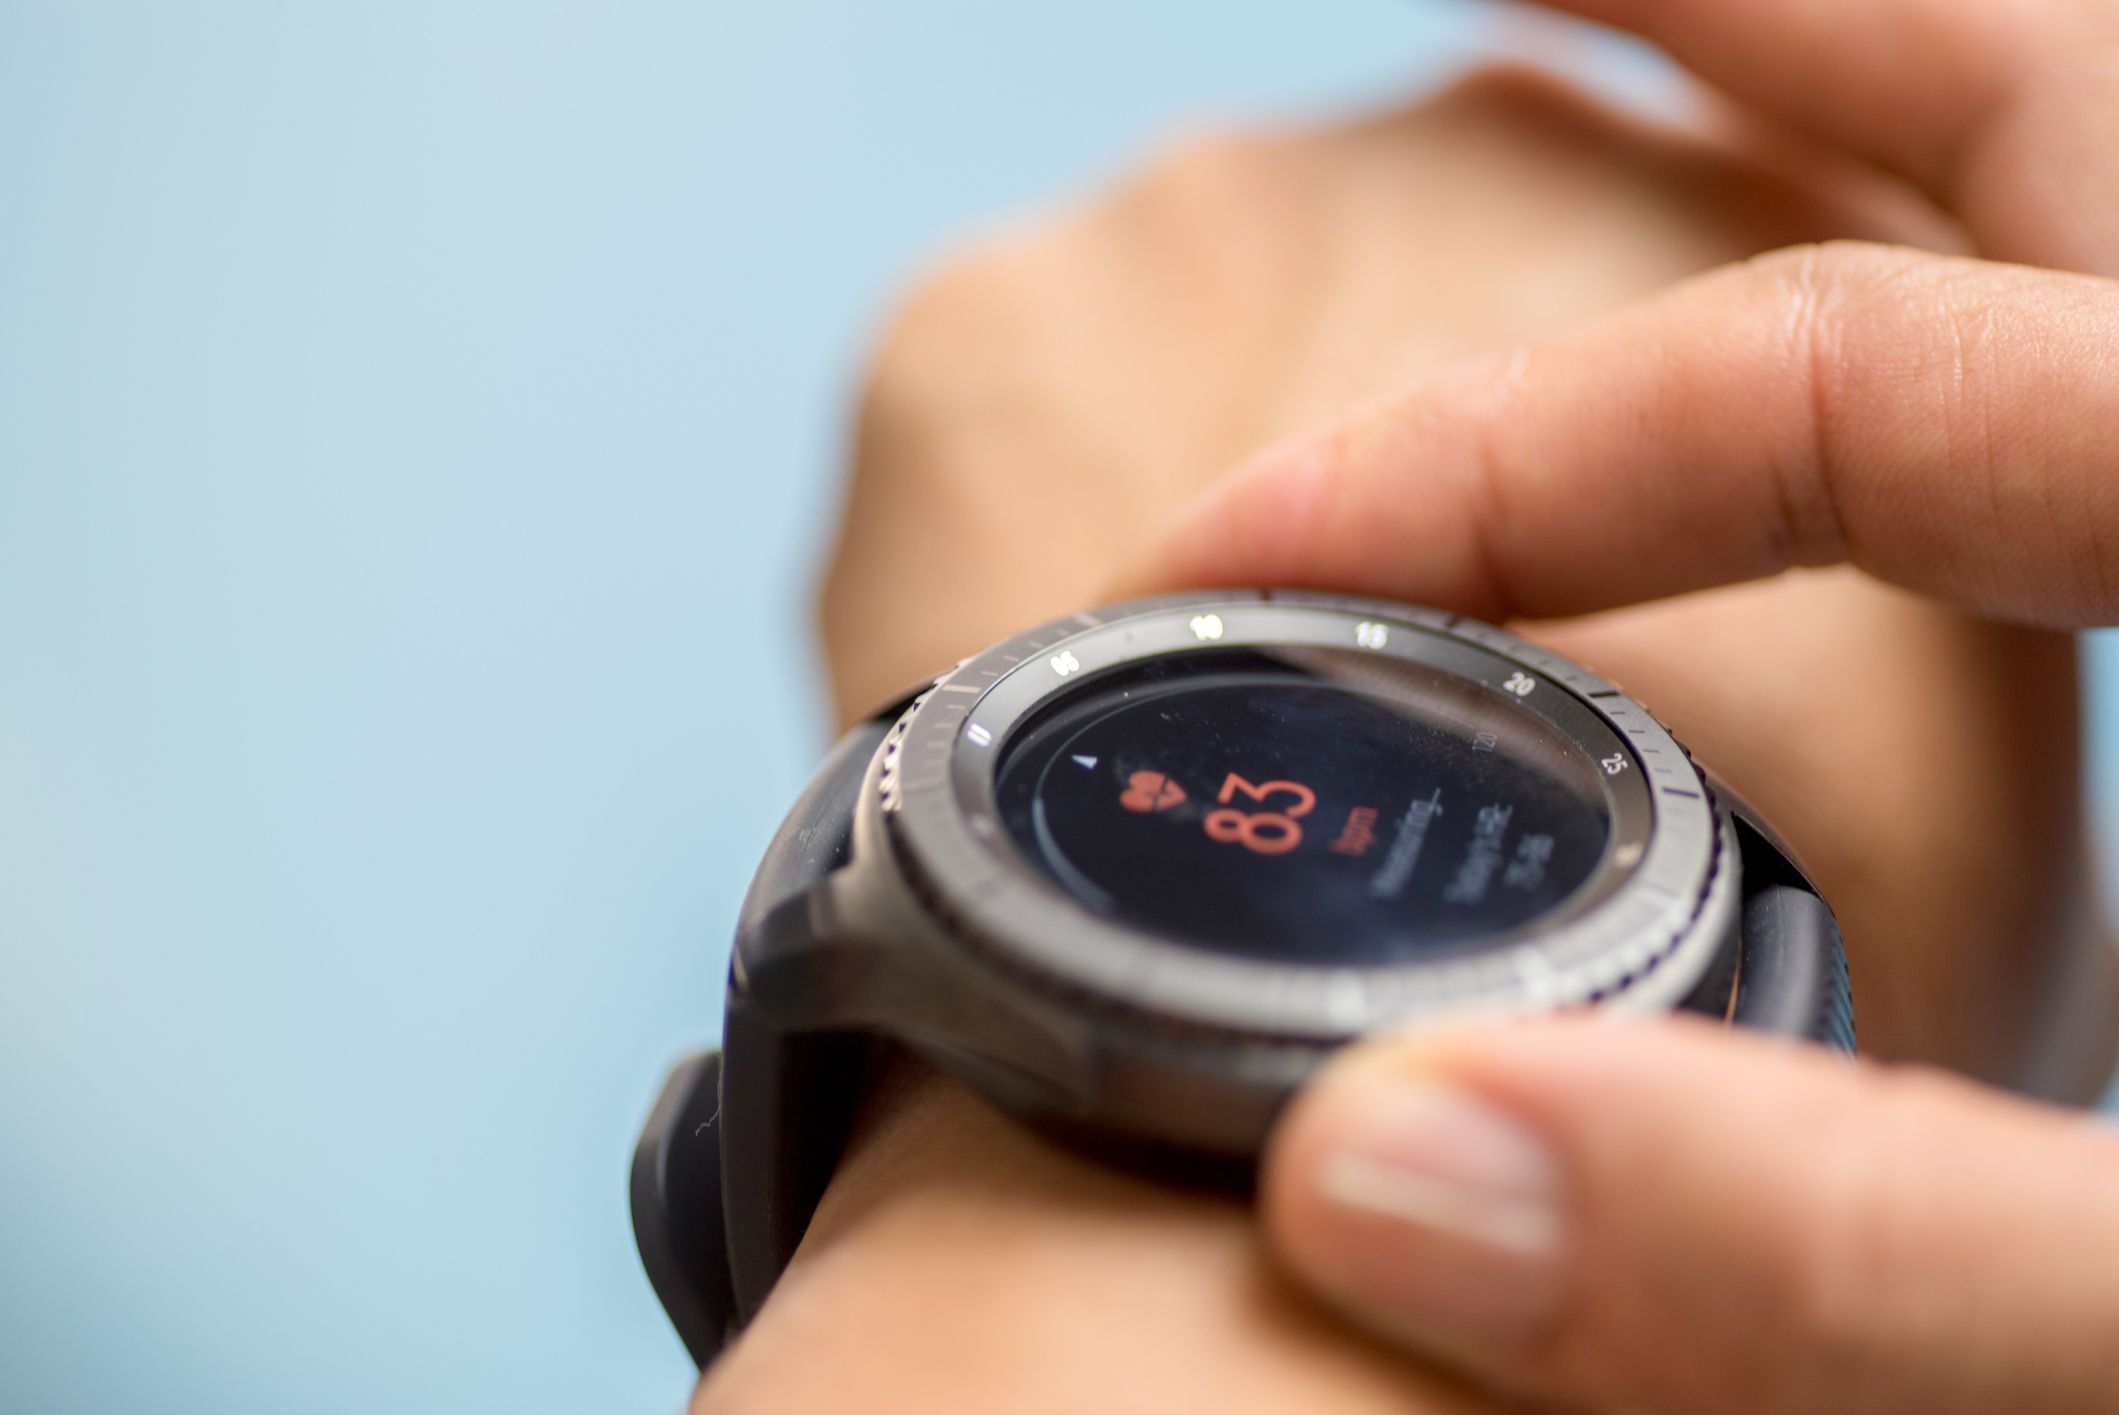 Watch competition. Watches или watchs. Optima часы. Датчик пульса Samsung Galaxy watch. Running watch.